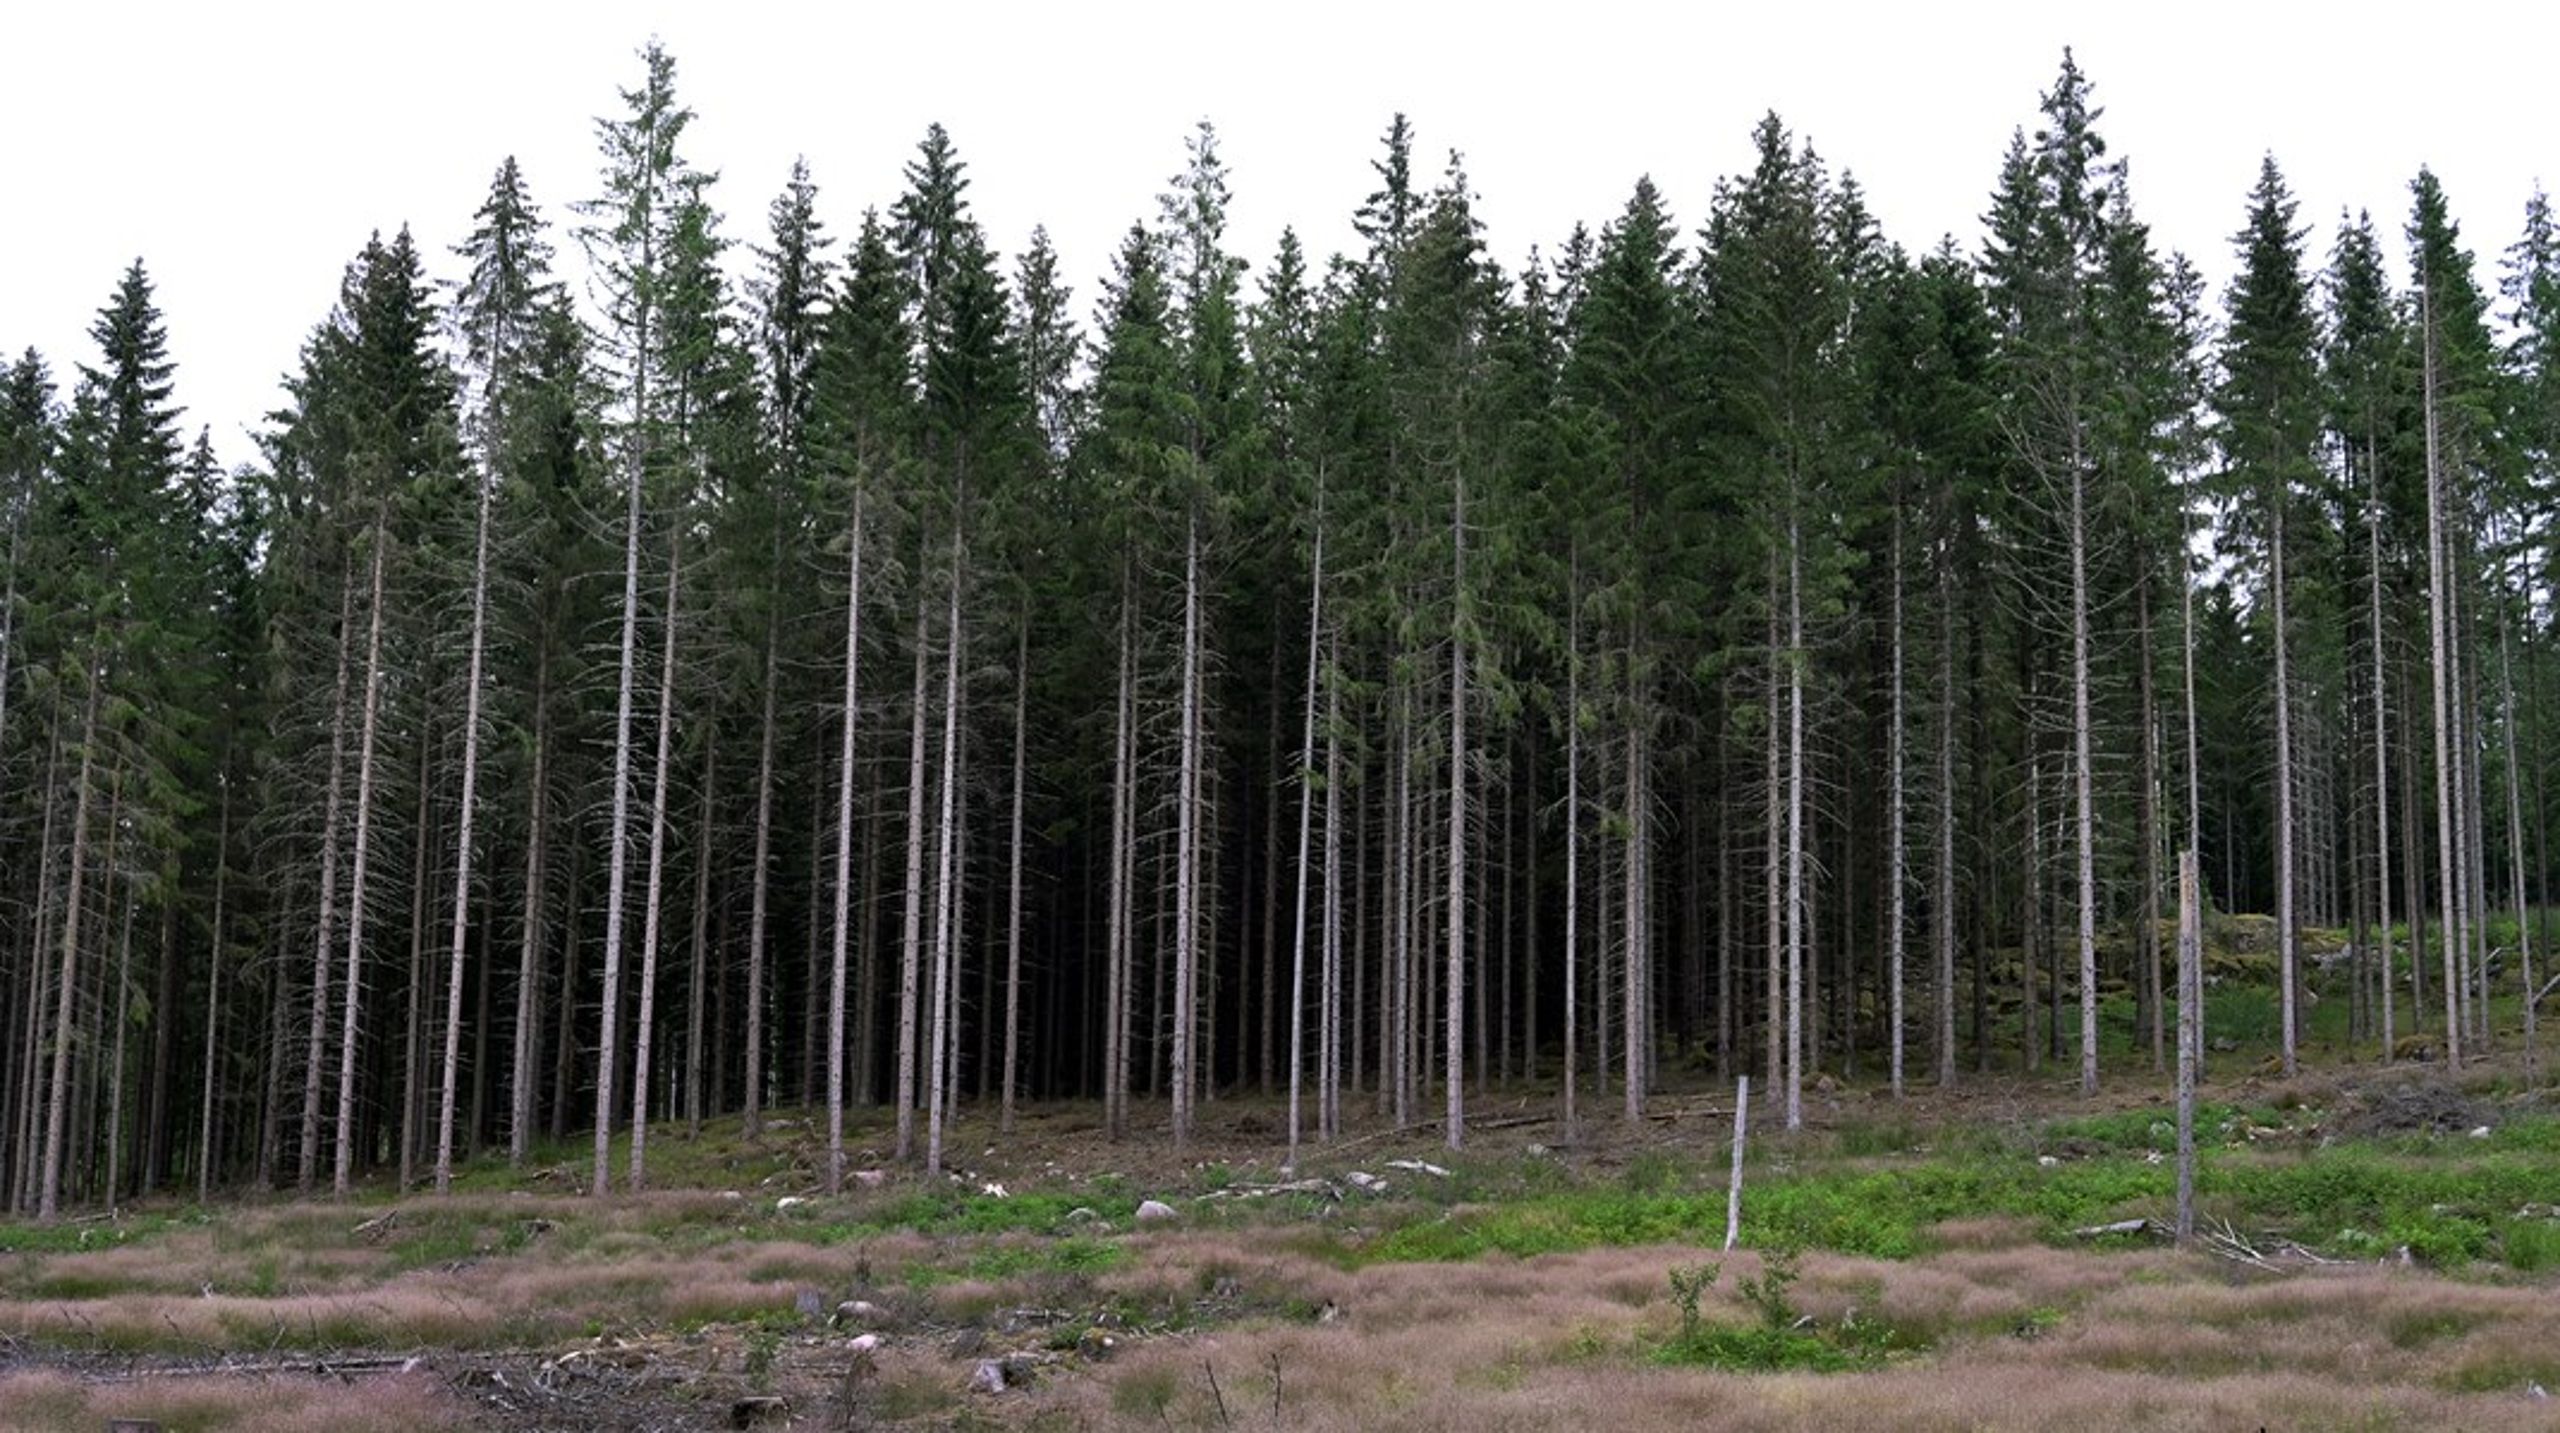 Tillståndet för biologisk mångfald och ekosystem i skogen är allvarligt, skriver debattörerna.